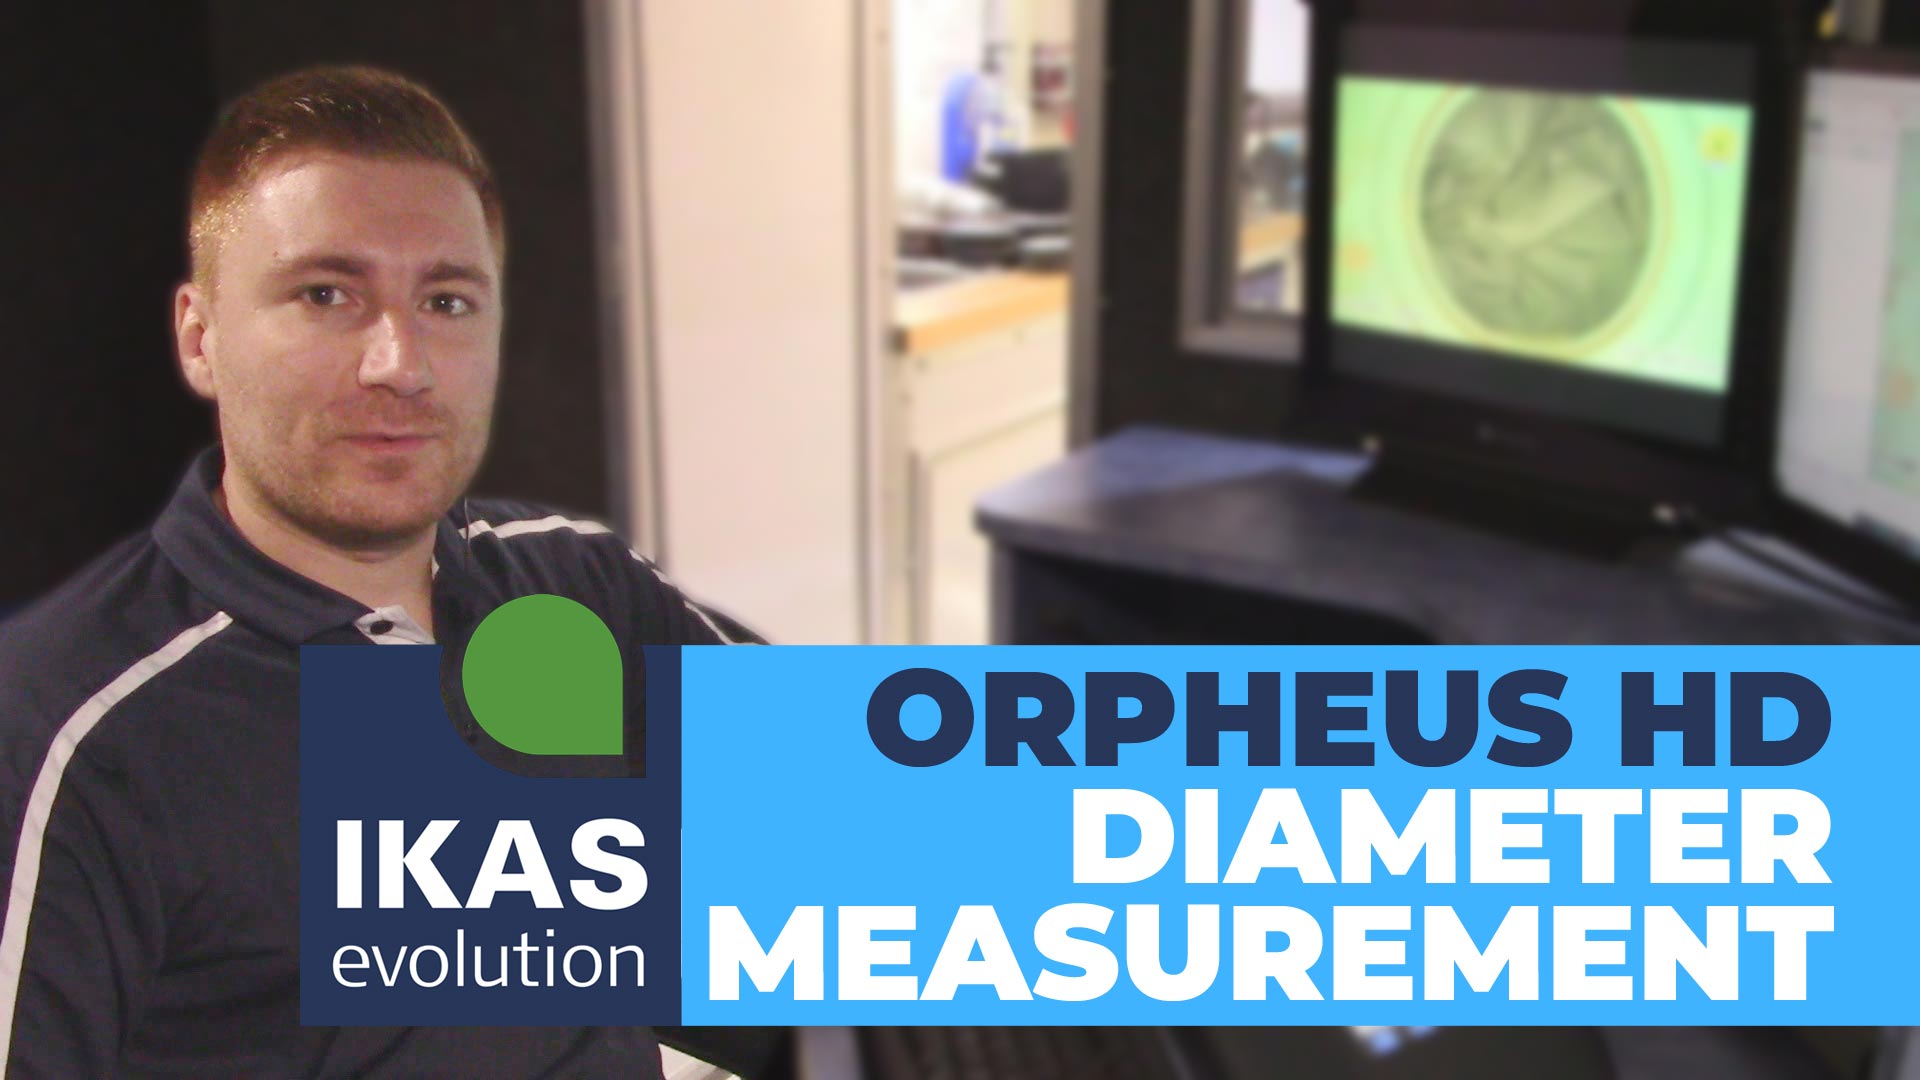 ORPHEUS HD Diameter Measurement